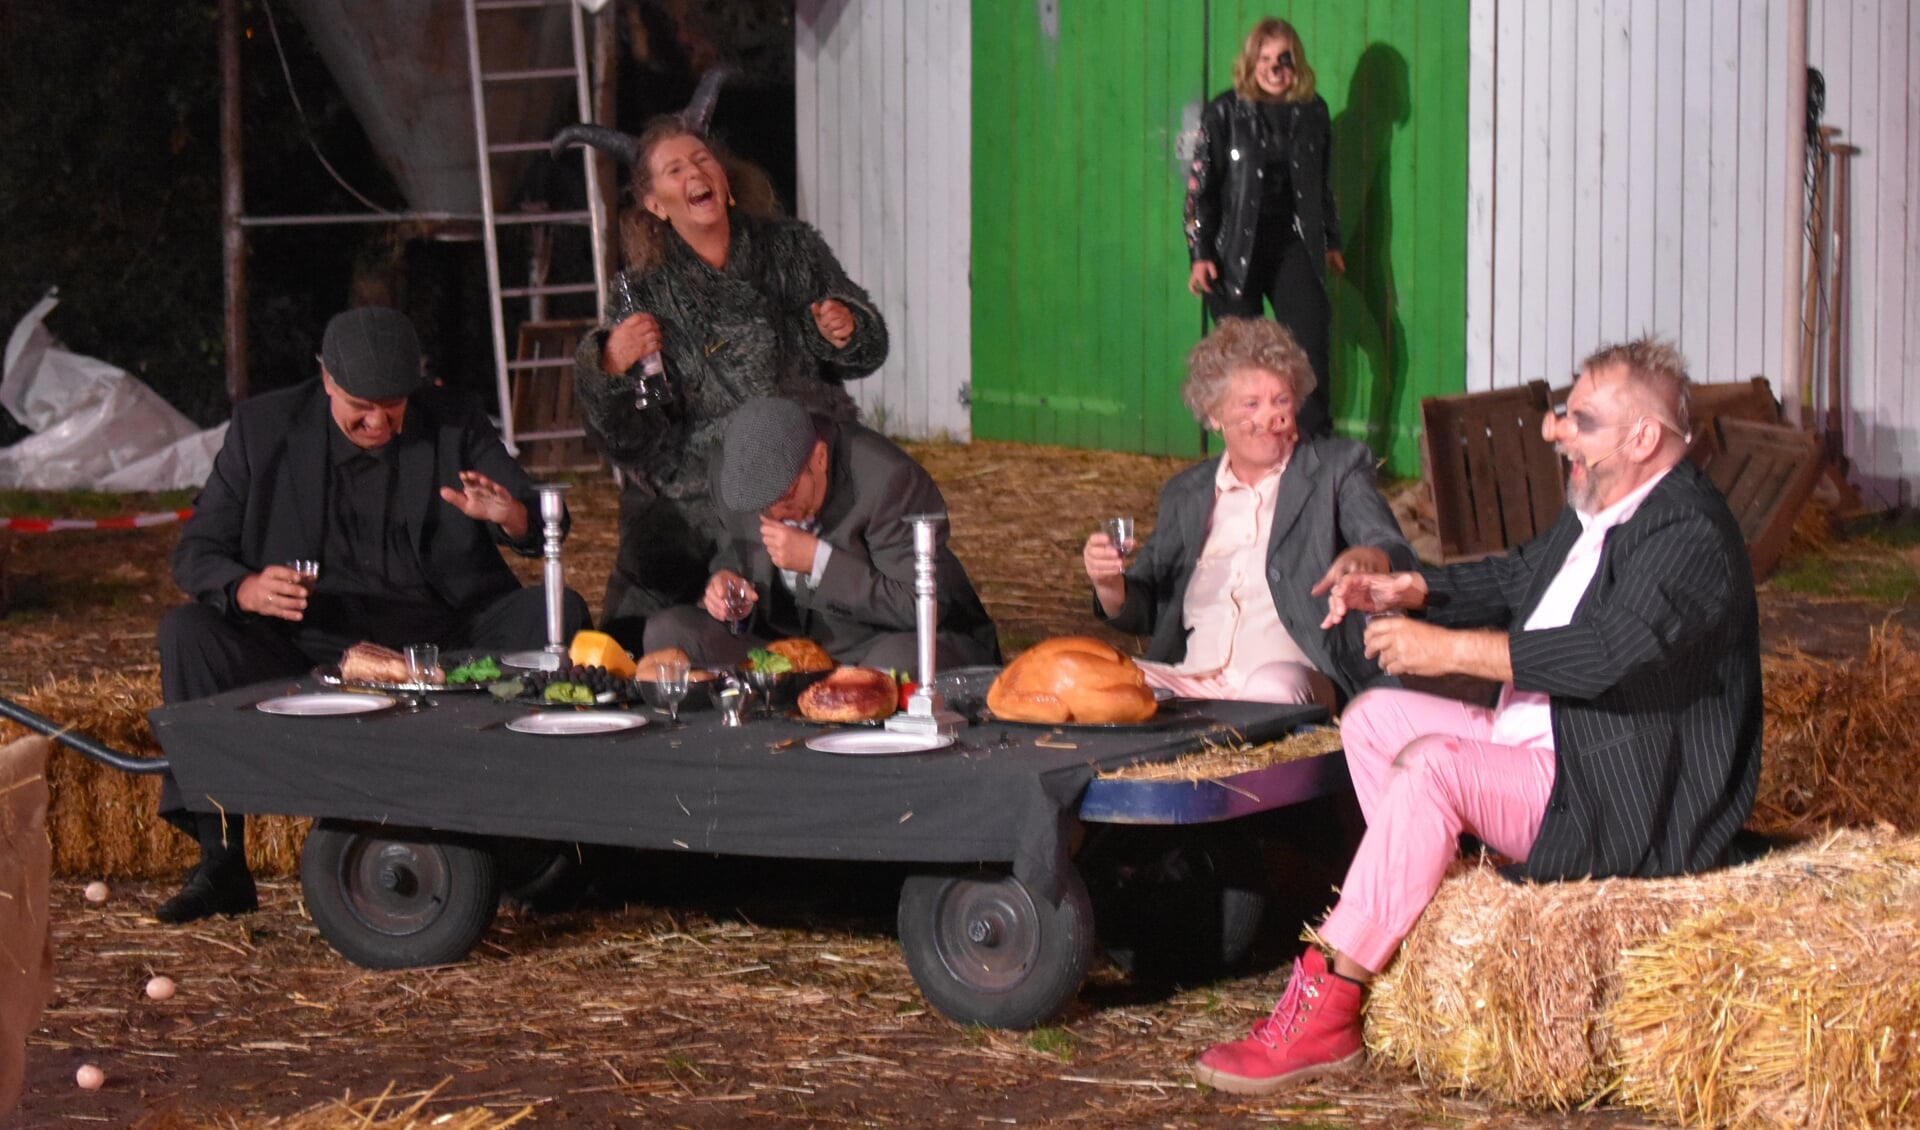 De bijna laatste scène van 'Animal Farm' blijkt ook de bijna laatste scène van Stichting Iepenloftspul Opsterlân.